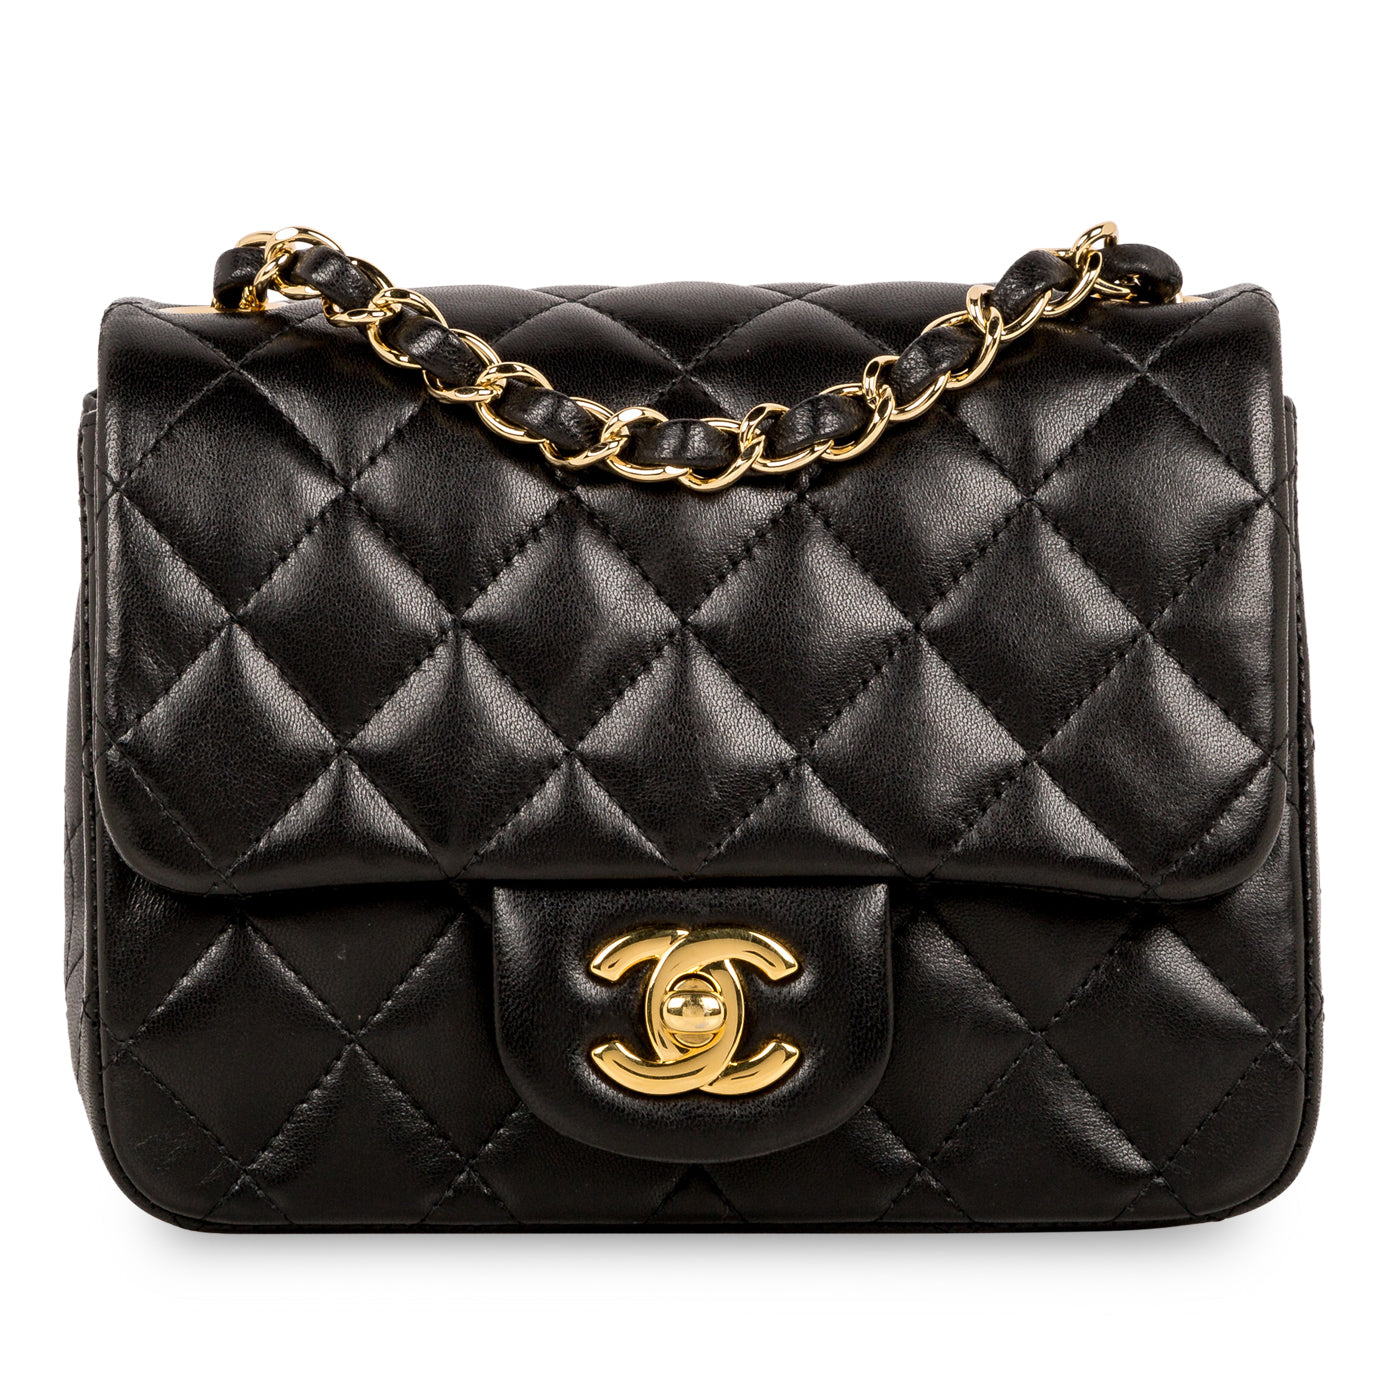 Chanel Classic Flap Handbags | IQS Executive